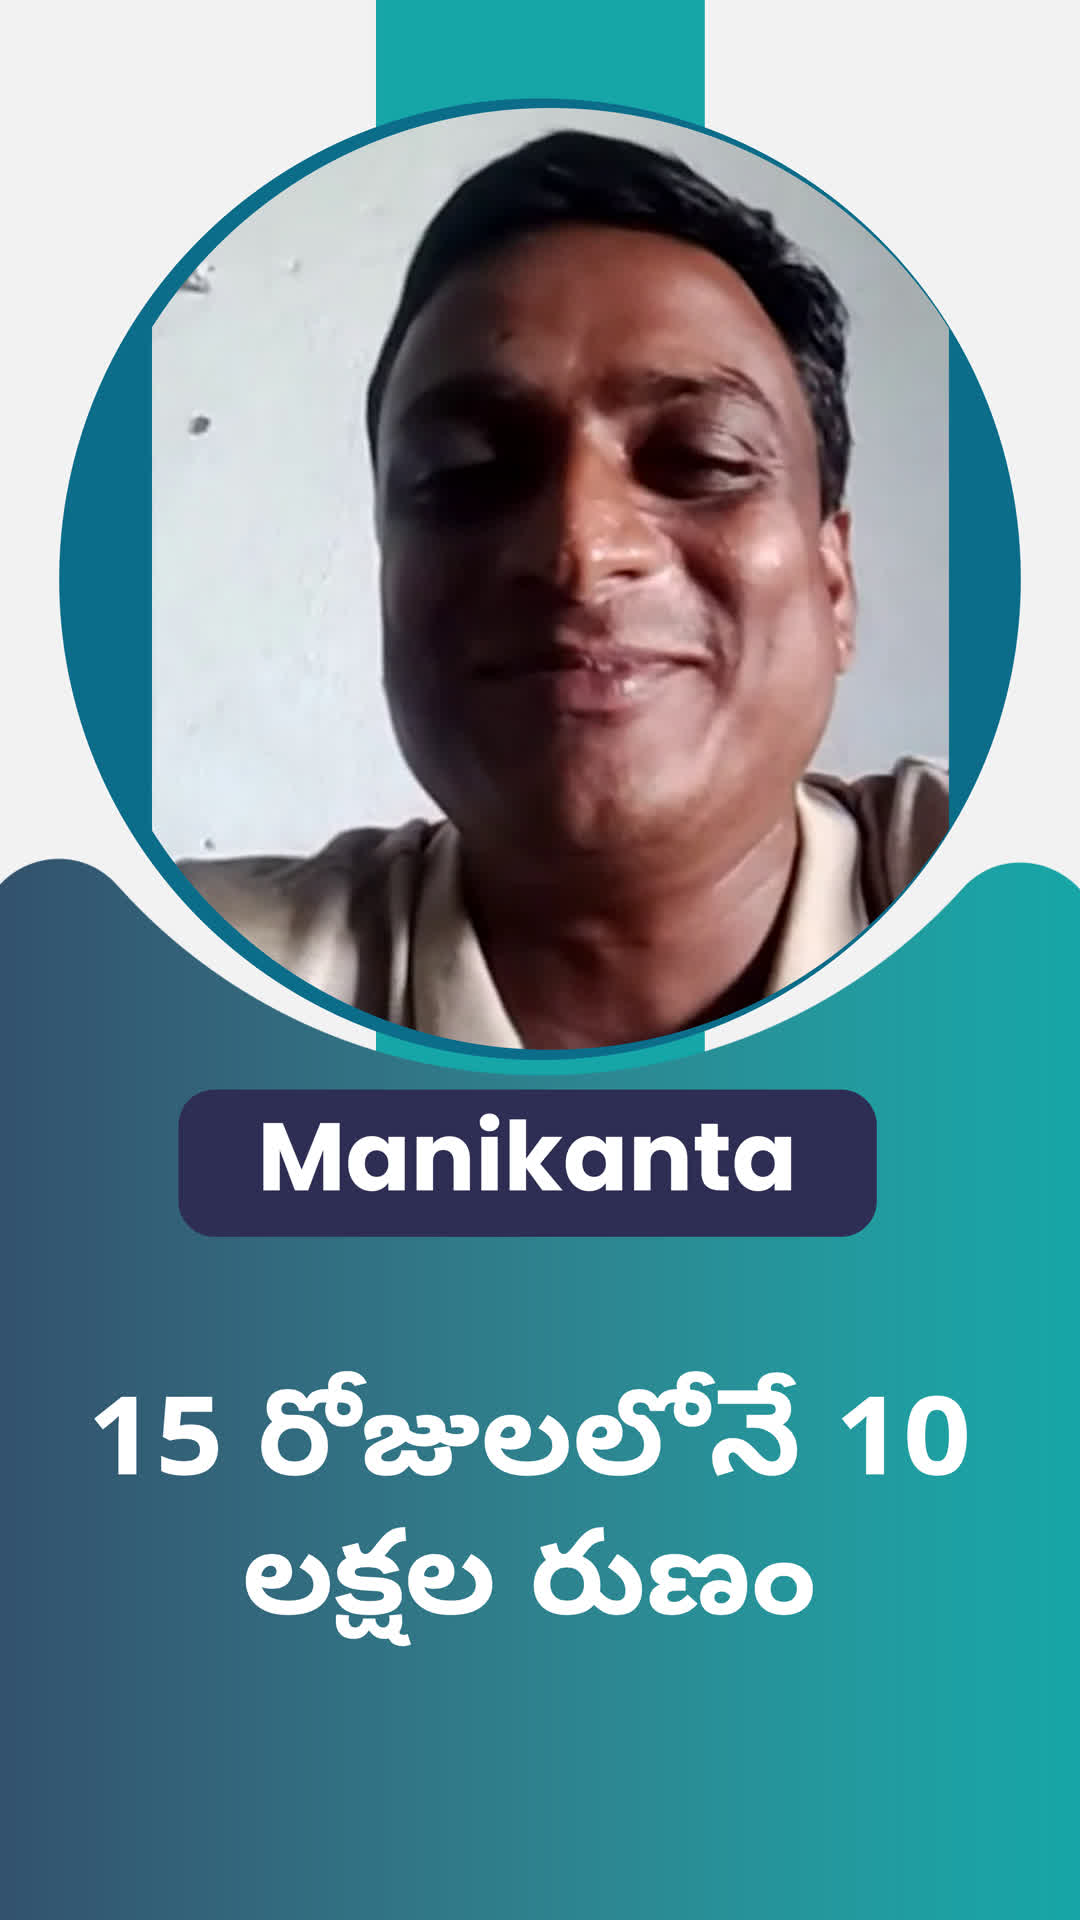 Manikanta's Honest Review of ffreedom app - East Godavari ,Andhra Pradesh